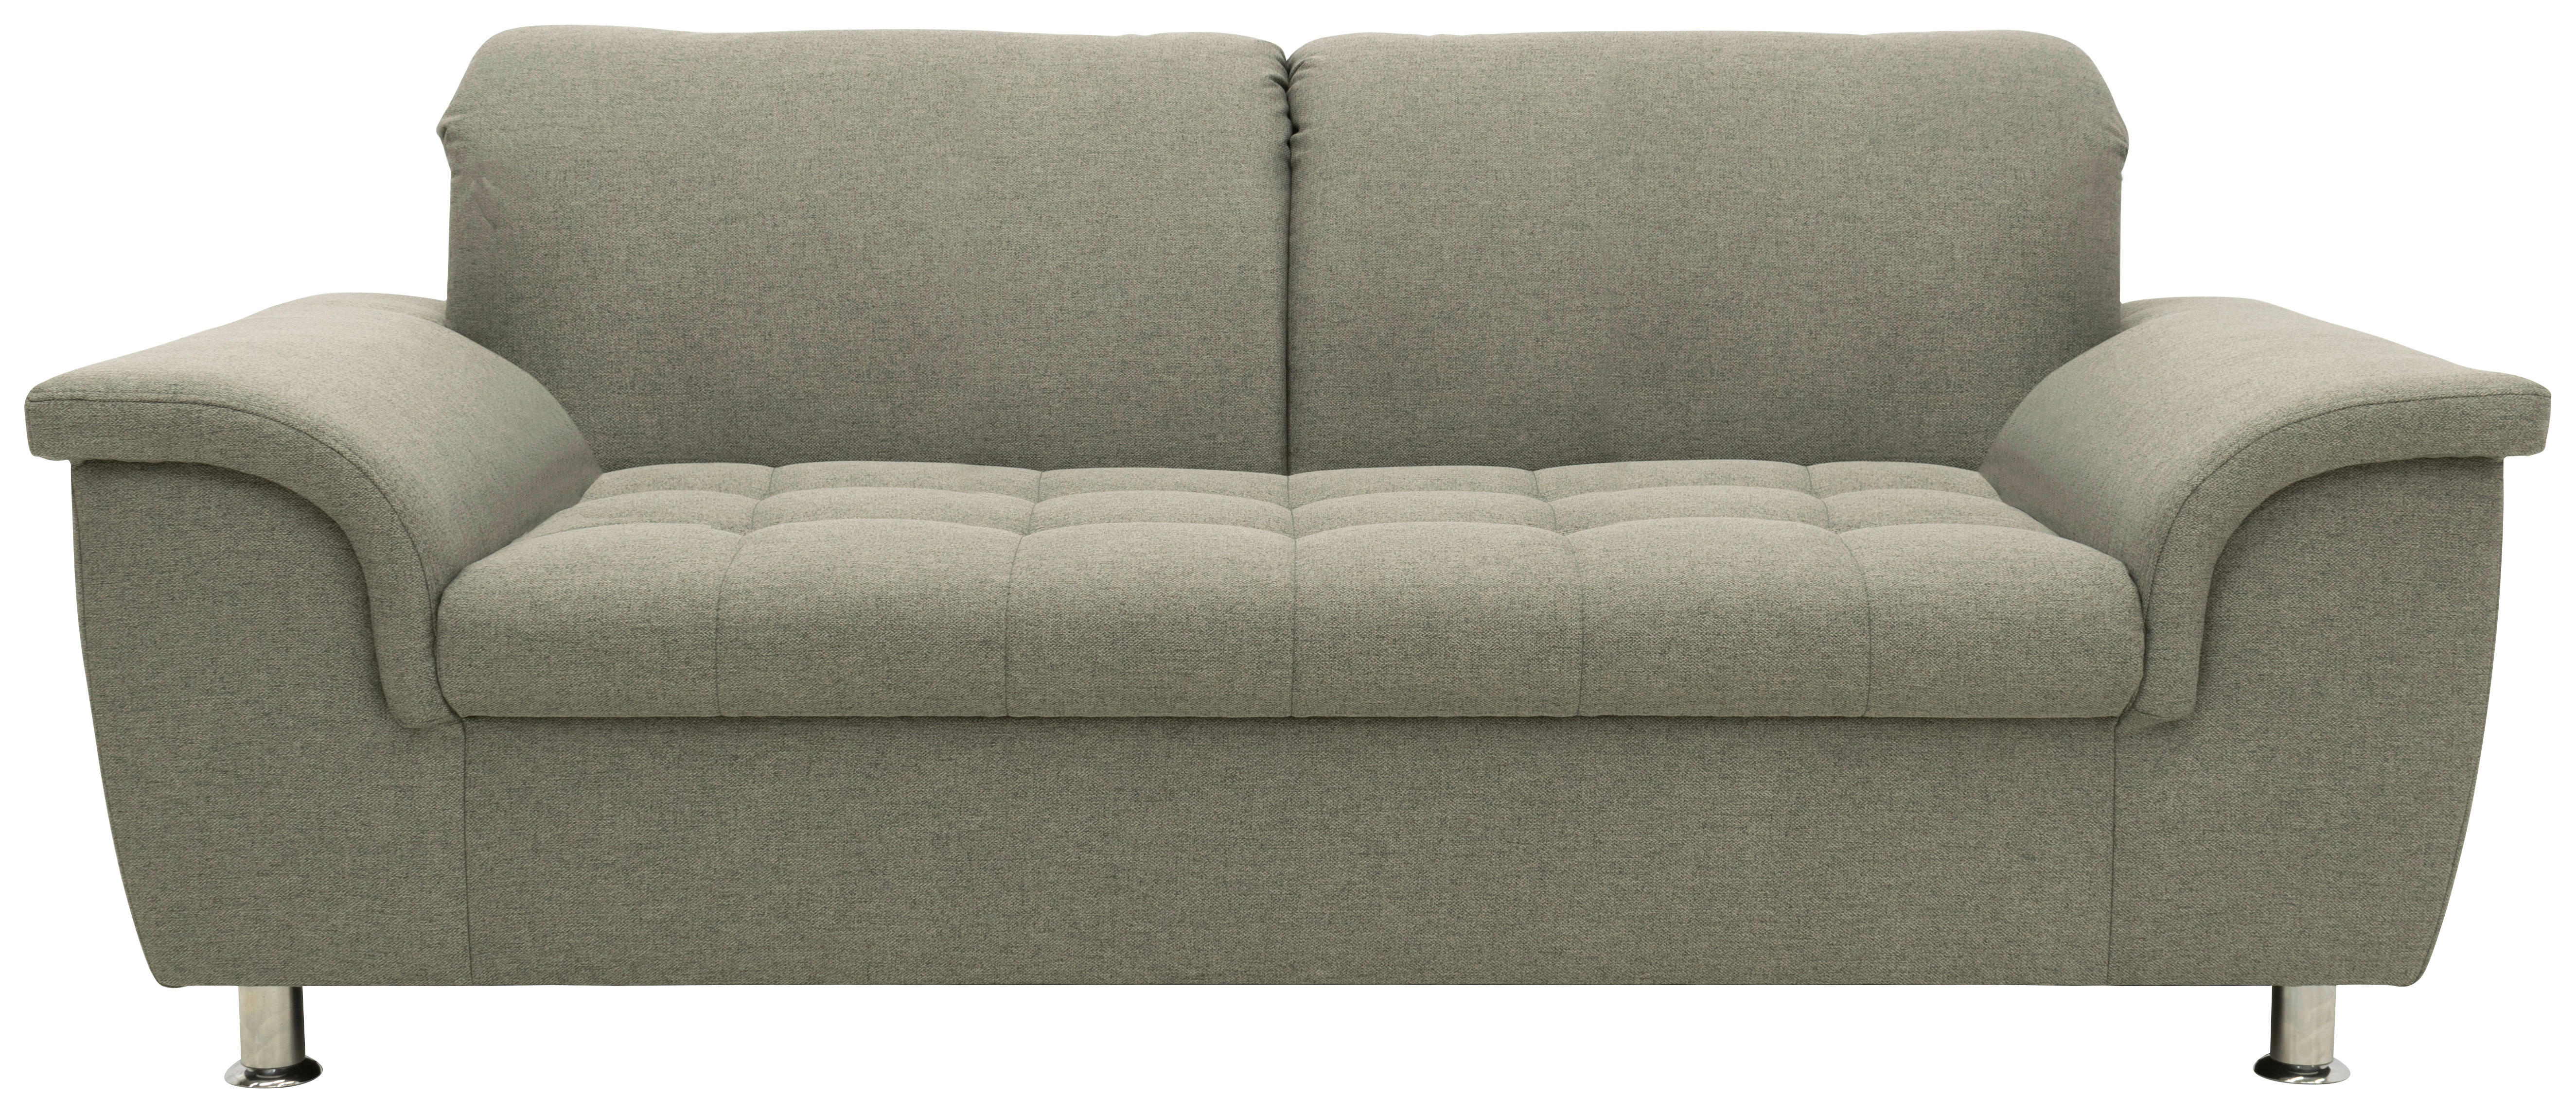 Zweisitzer-Sofa mit Funktion Webstoff Graubraun  - Chromfarben/Graubraun, KONVENTIONELL, Textil/Metall (190/81/105cm) - MID.YOU